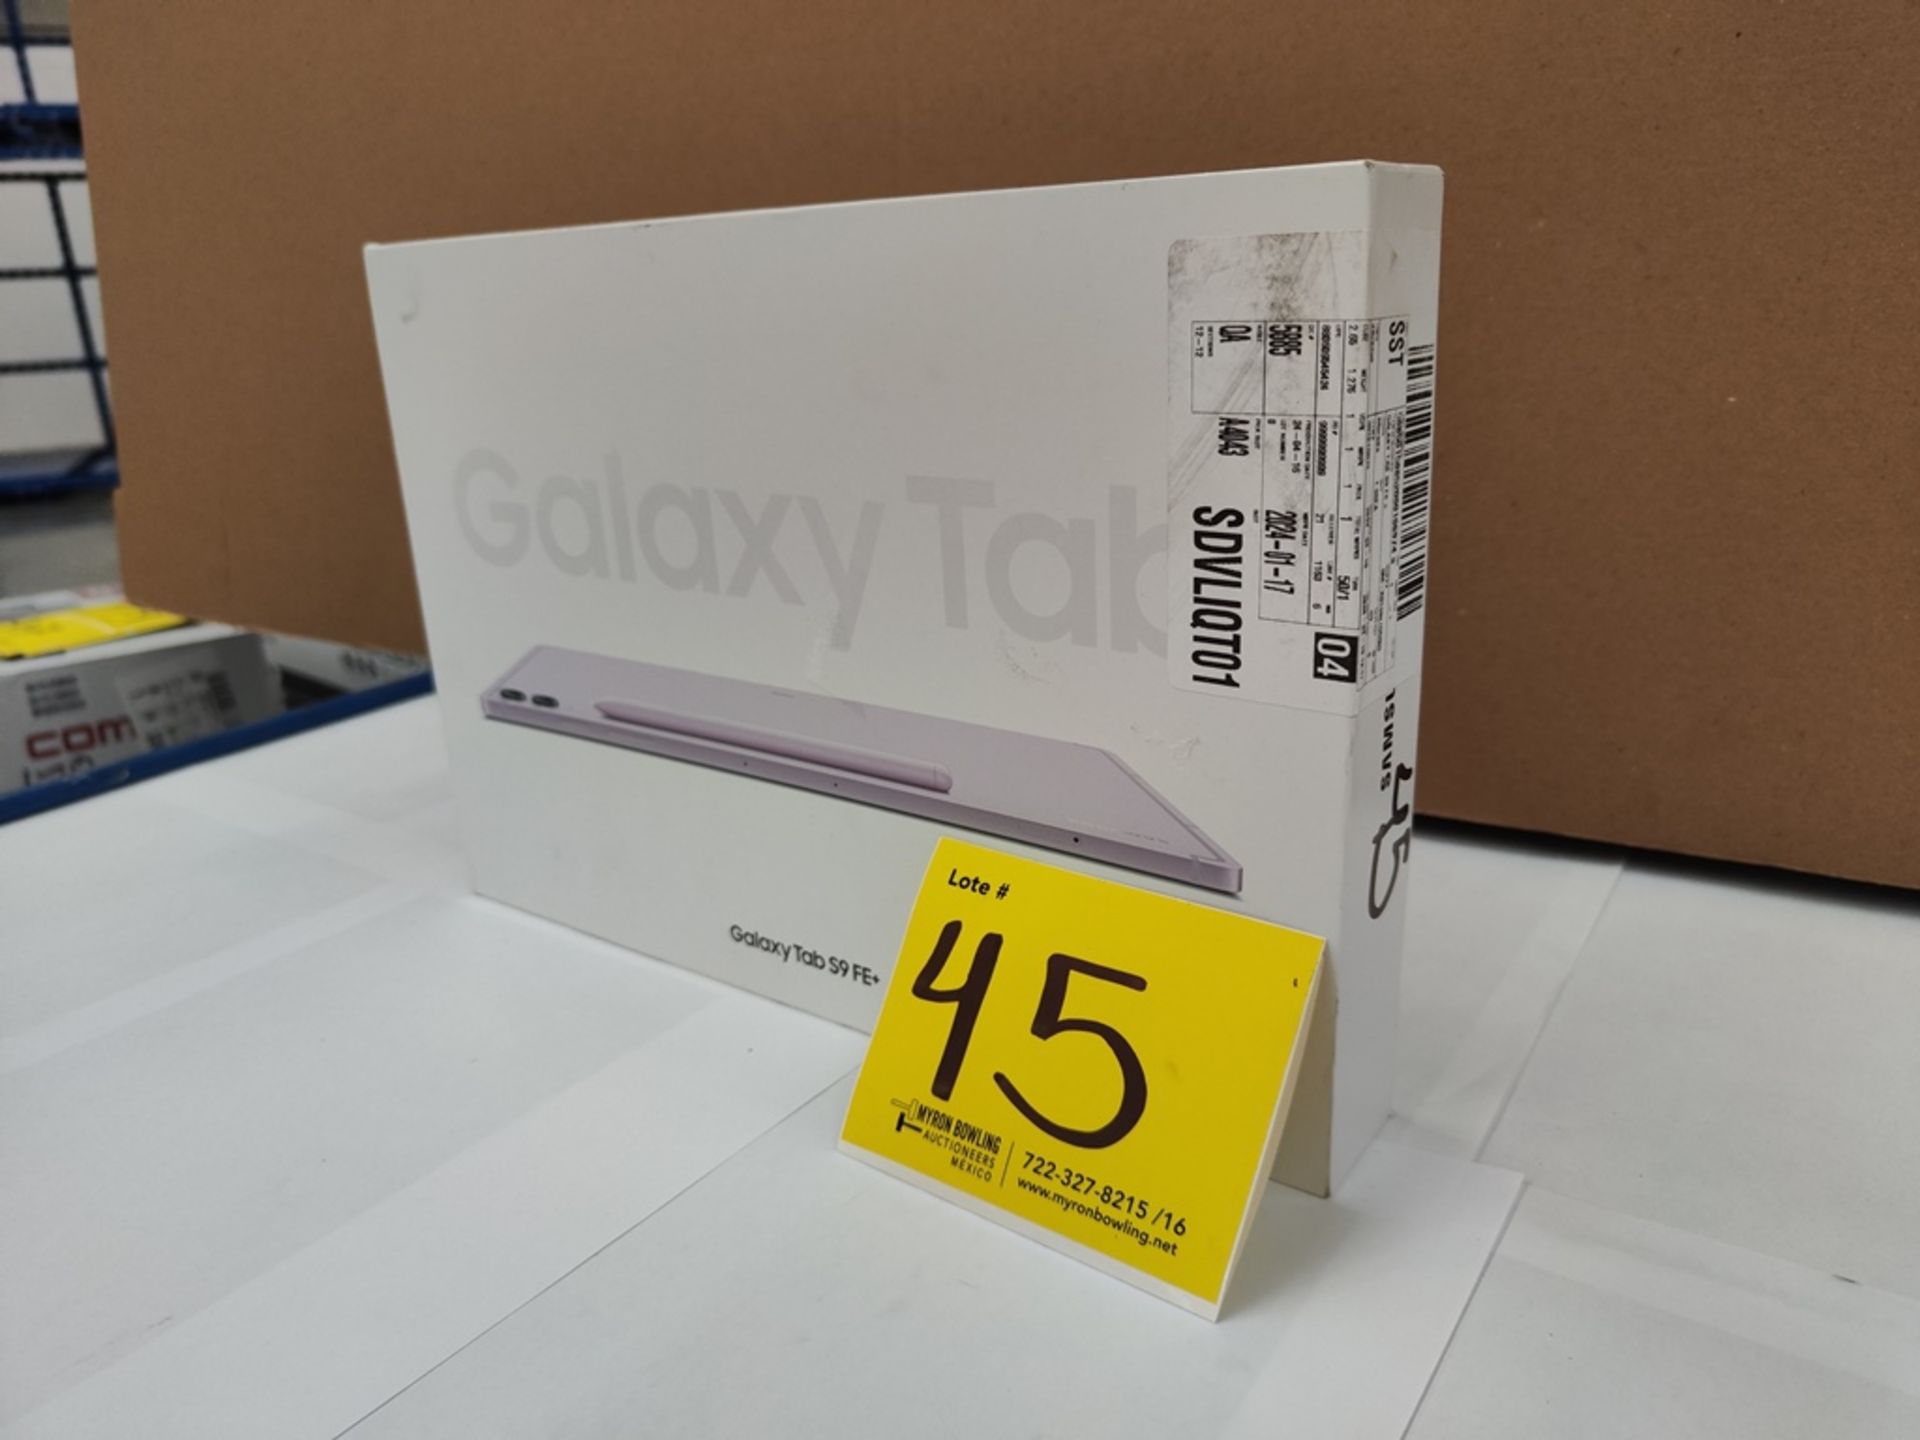 (NUEVO) Galaxy TAB S9 FE, Serie R52X3081B4F, Color LILA, 128 GB De Almacenamiento + 8GB RAM - Image 2 of 5